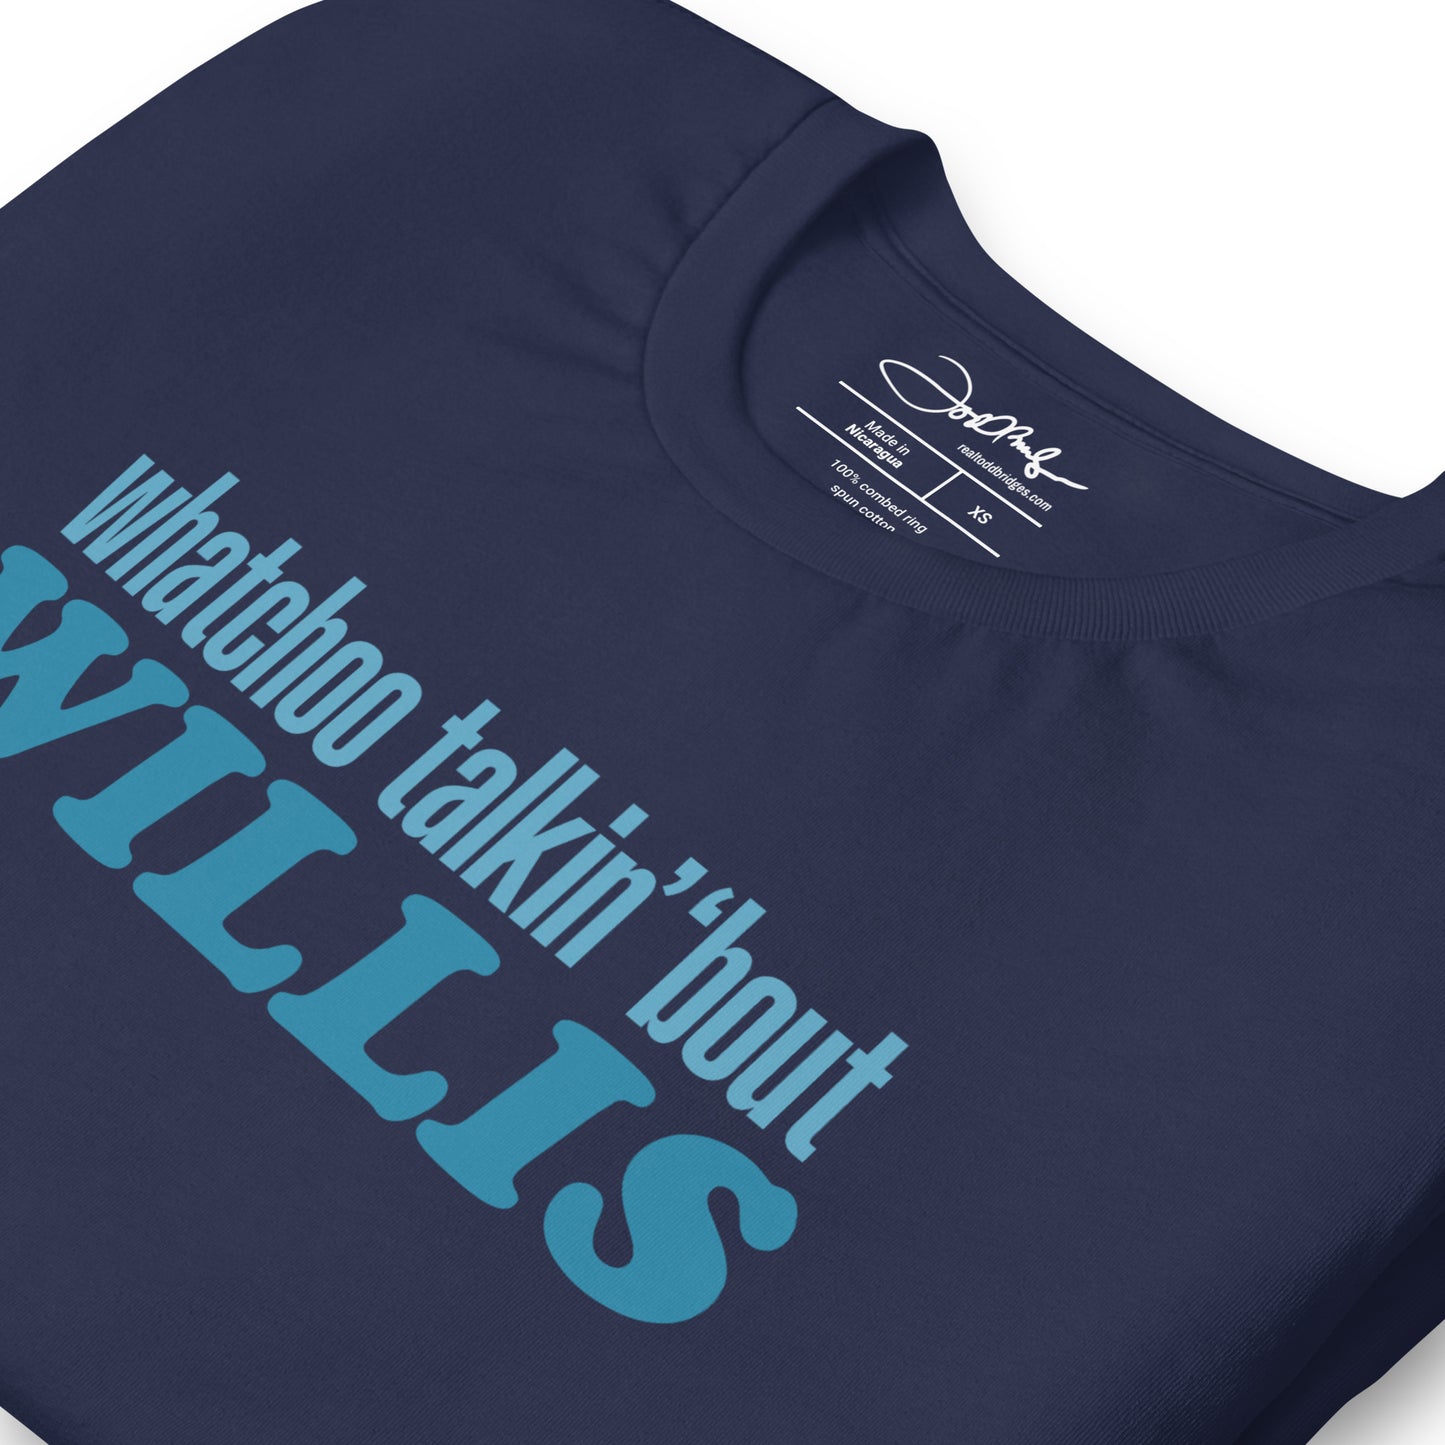 "Whatchoo Talkin Bout Willis" Blue Logo Tee